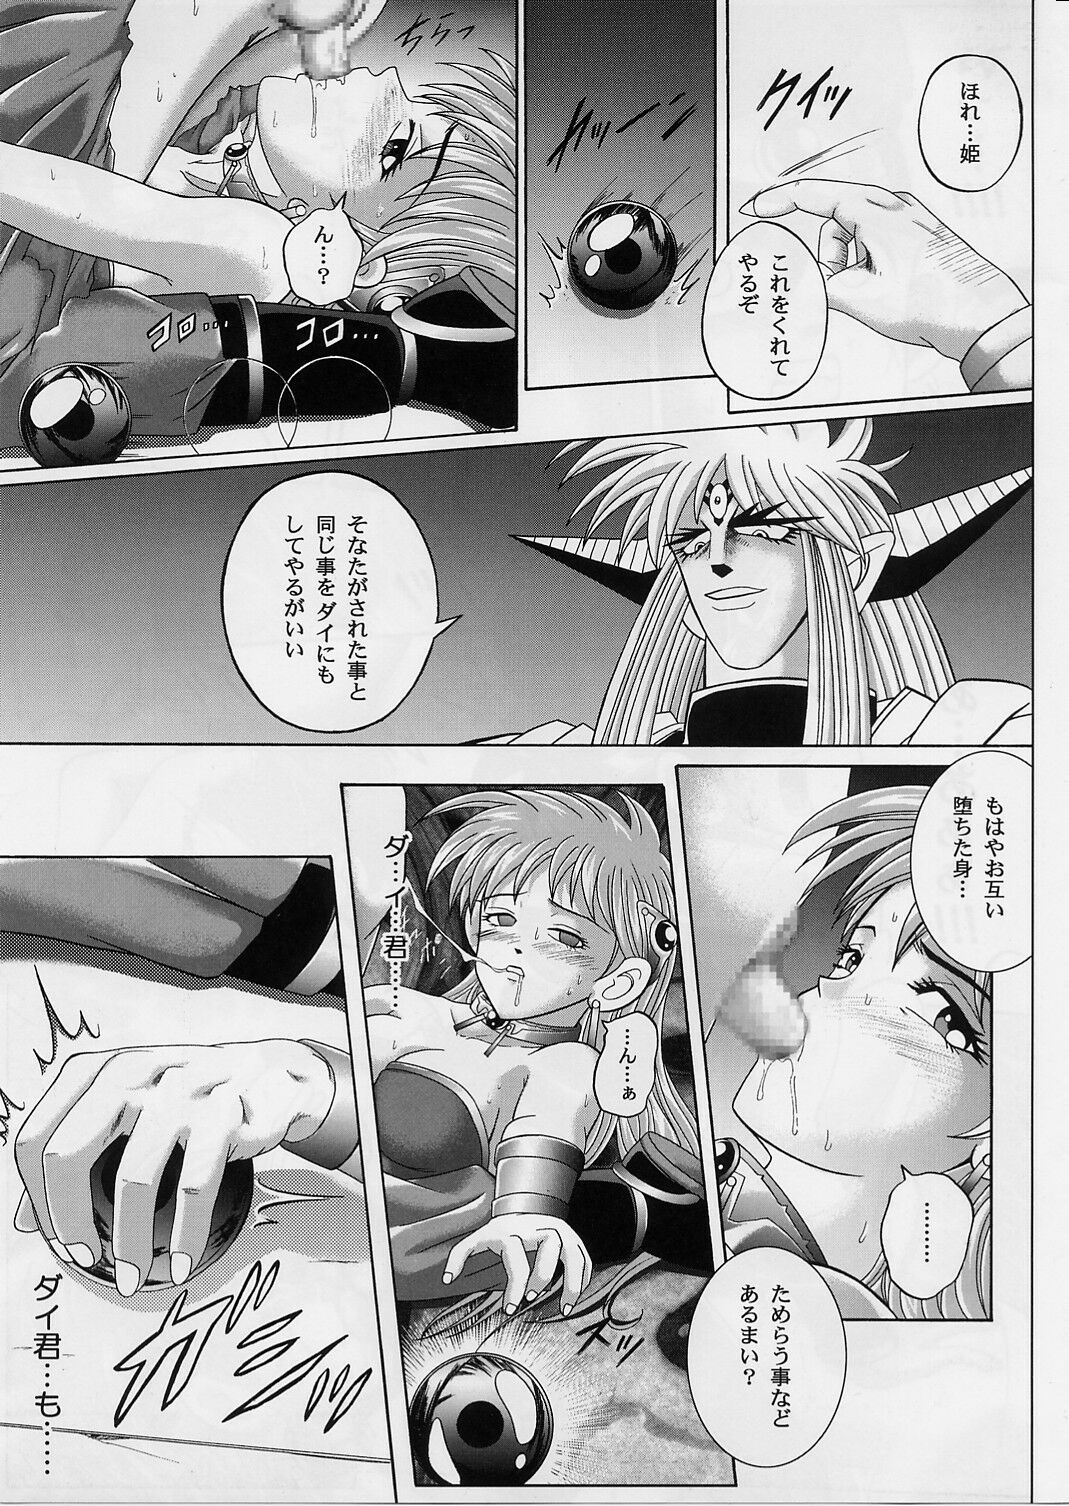 [Cyclone (Izumi, Reizei)] DIME ALLIANCE 2 (Dragon Quest Dai no Daibouken) page 30 full